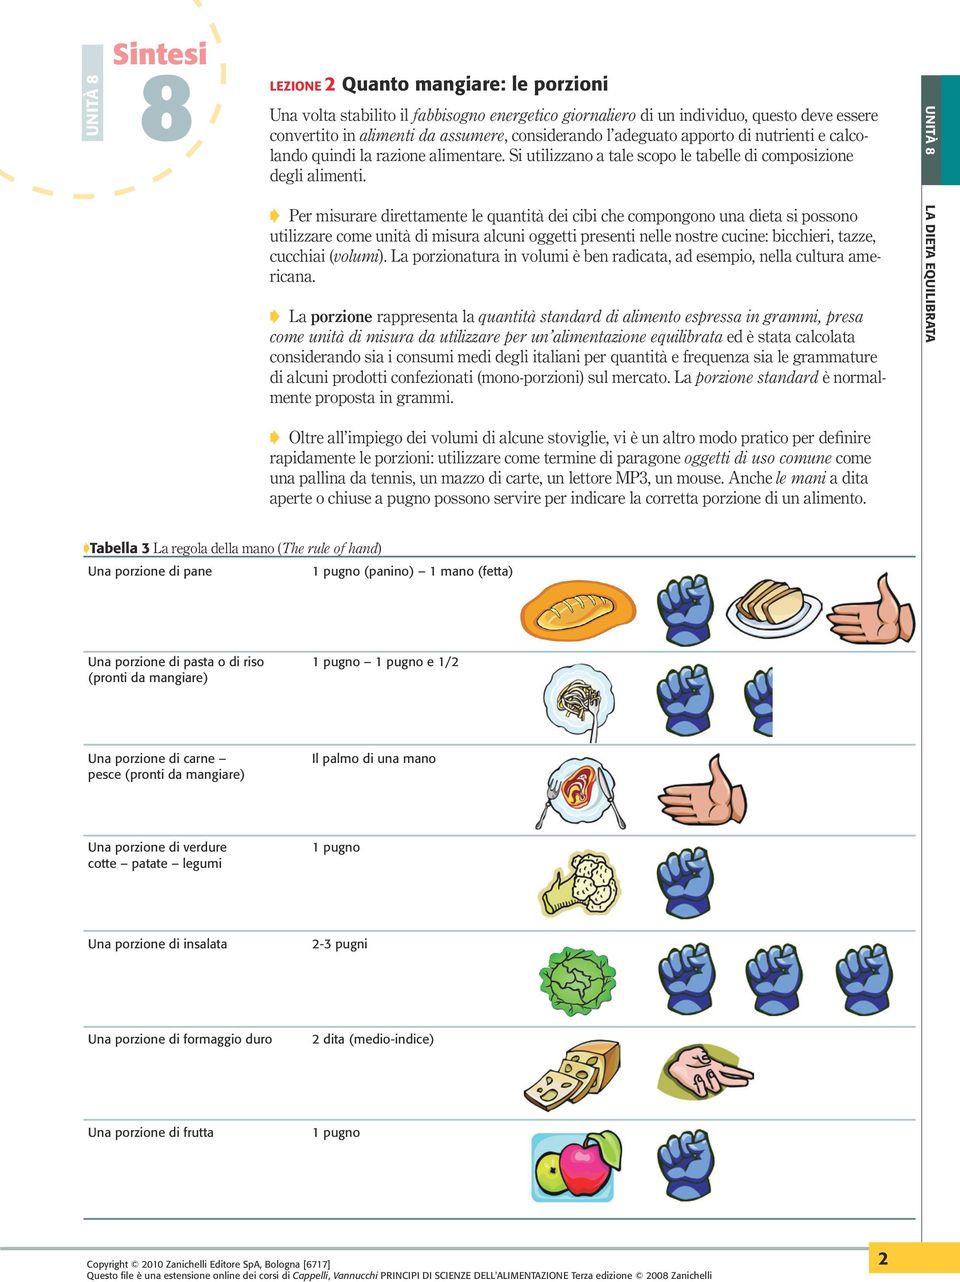 Chimica degli alimenti vannucchi pdf creator online